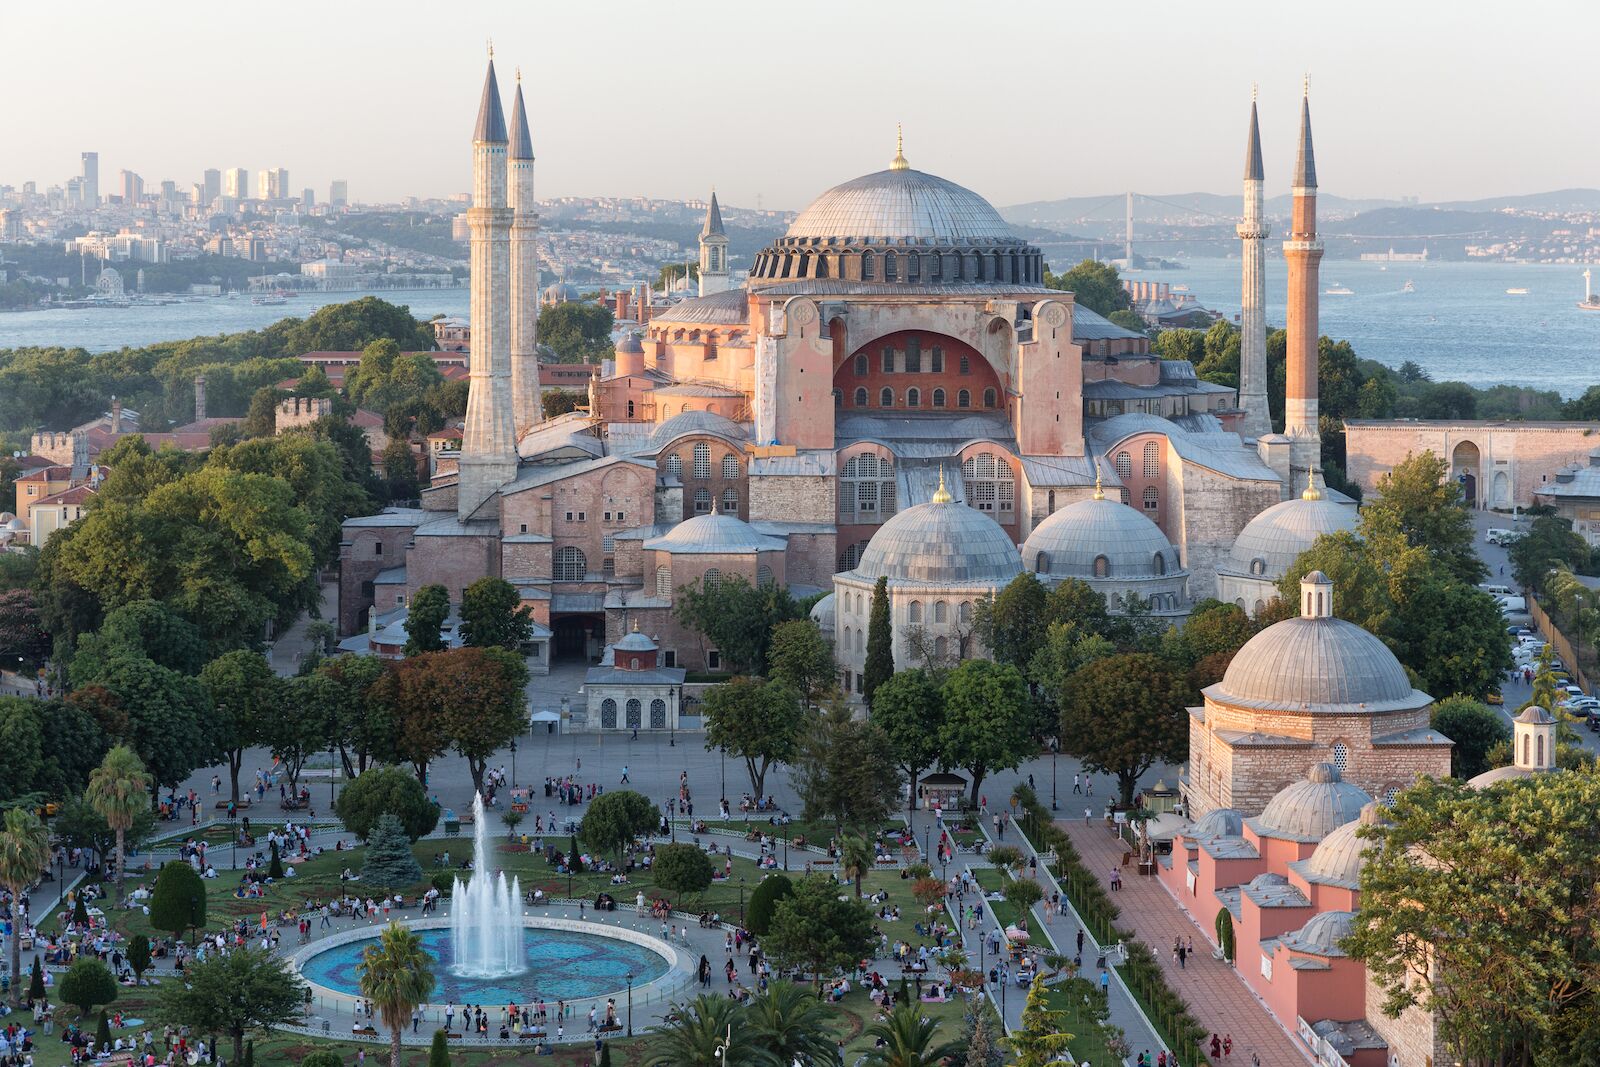 Aerial view of the Hagia Sophia